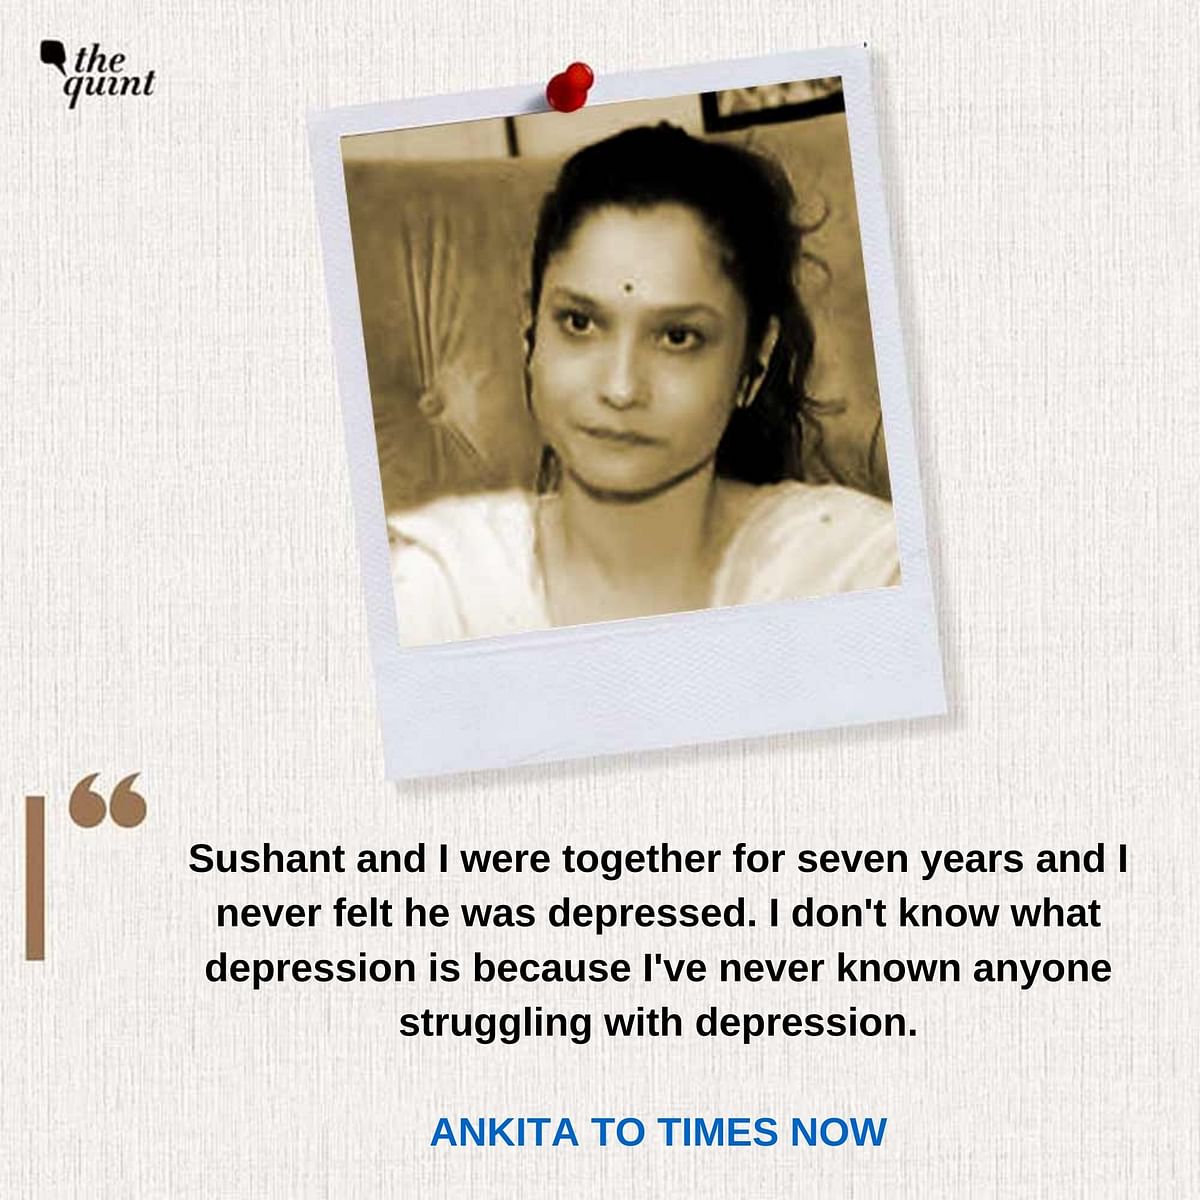 Ankita Lokhande says she refuses to believe Sushant was depressed. 